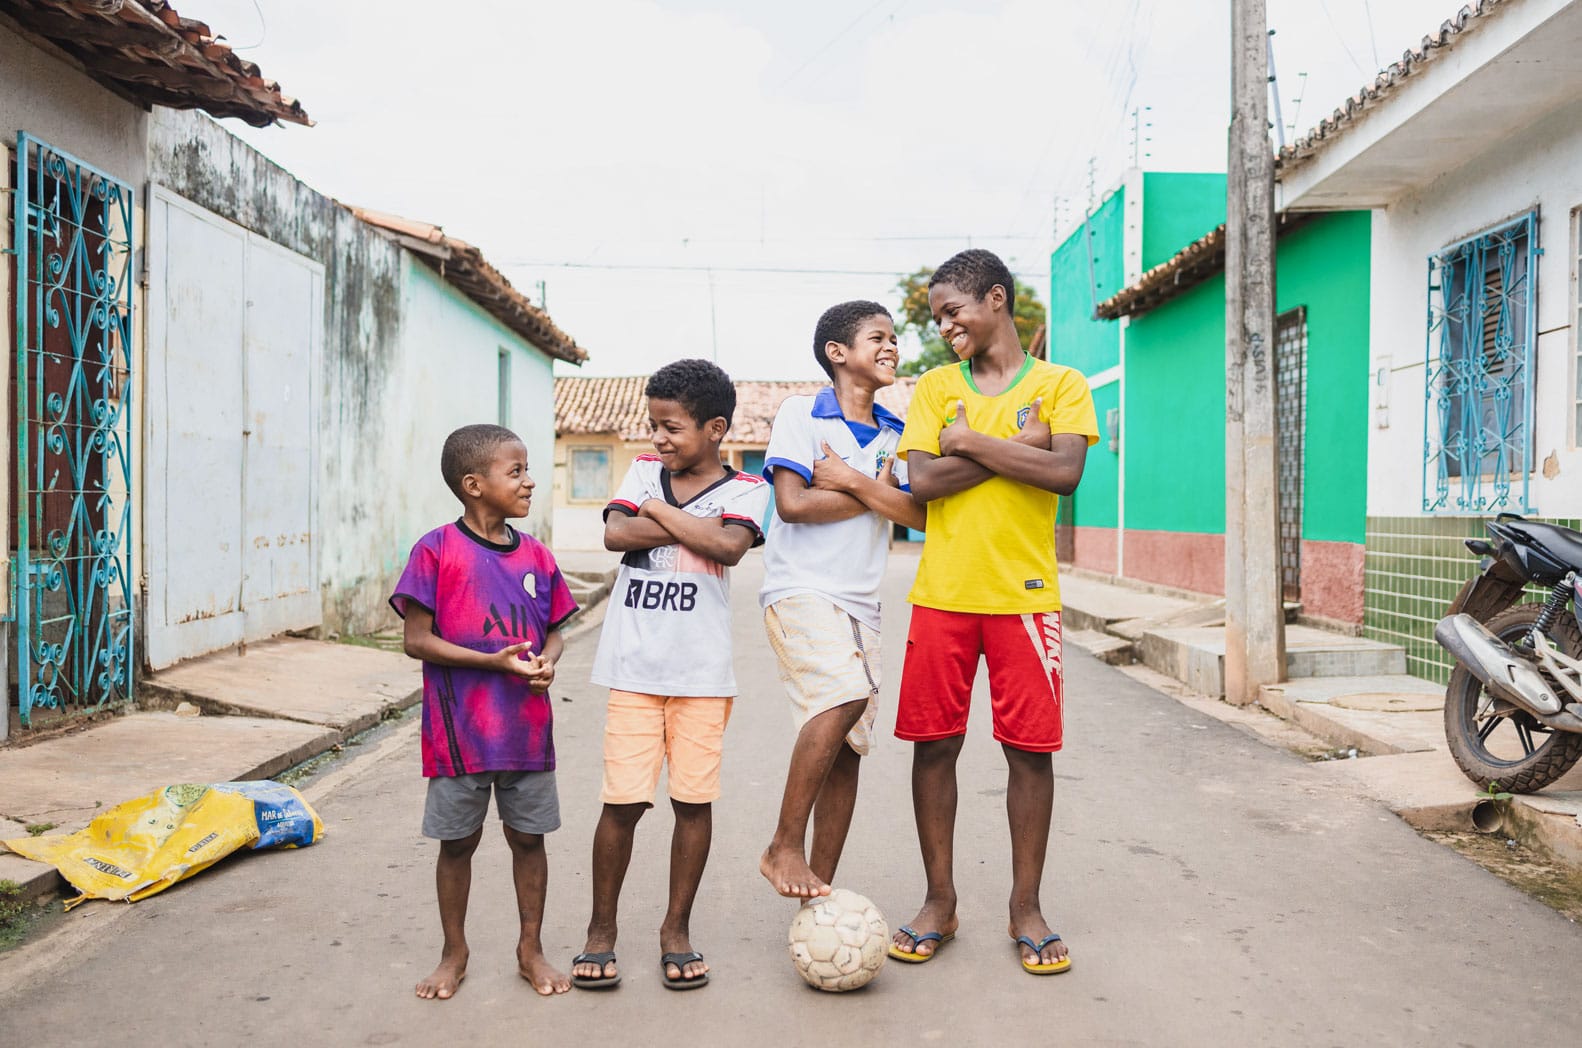 alt="Luis mit einem Fußball und Freunden auf der Straße, Luis`s Geschichte, Compassion Deutschland, Luís‘ Träume inmitten extremer Armut, Brasilien"